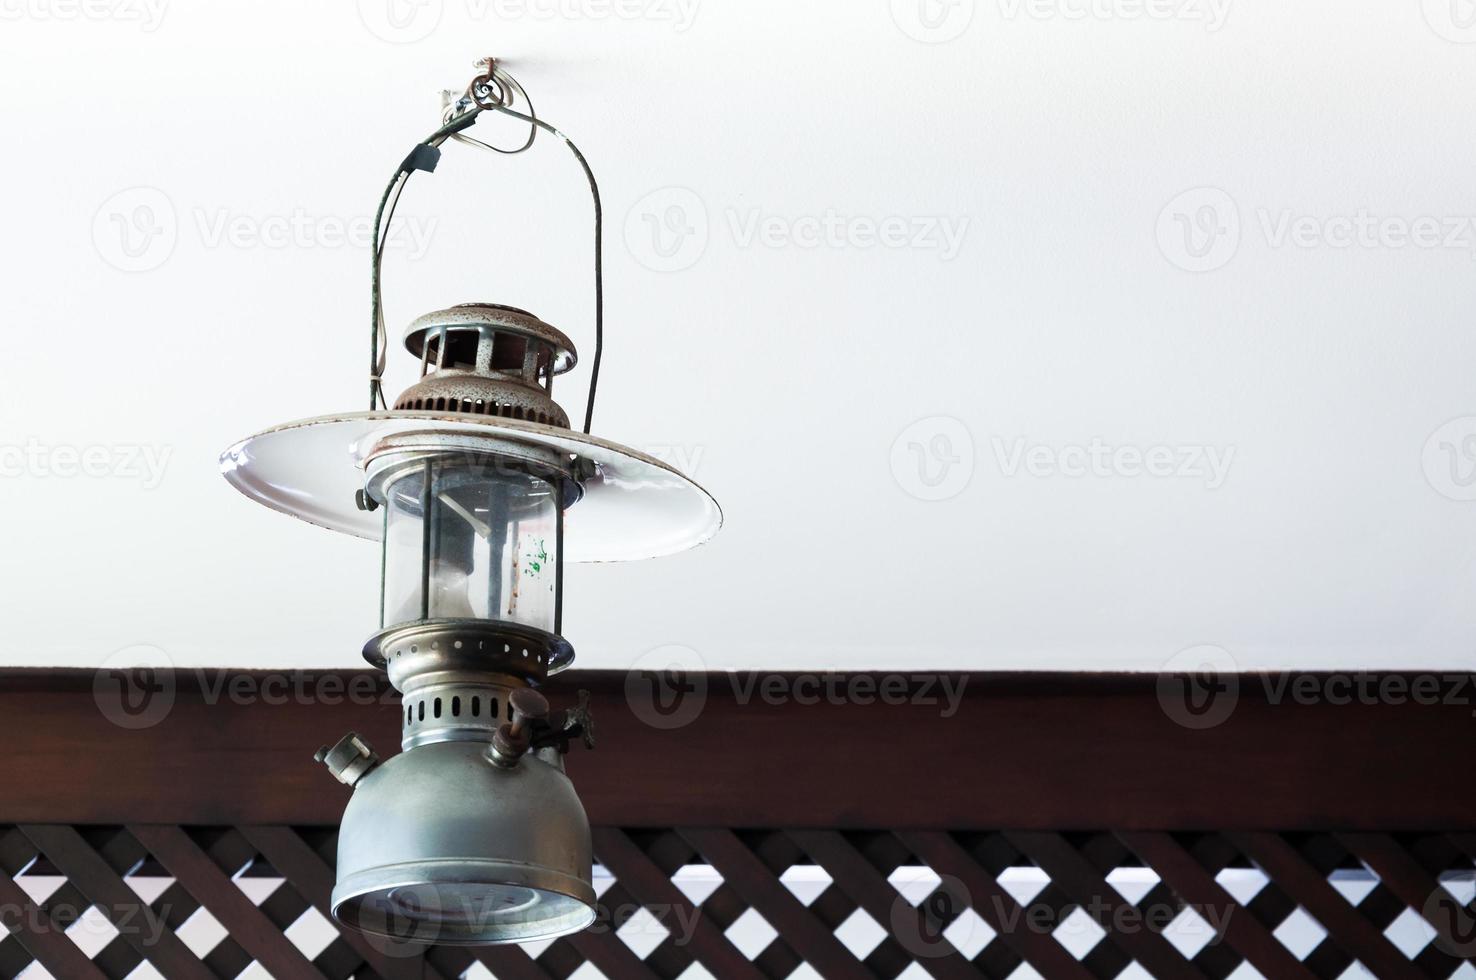 Clásico queroseno lámpara, gasolina lámparas cubiertas gasolina linterna, queroseno lamparas decoración foto